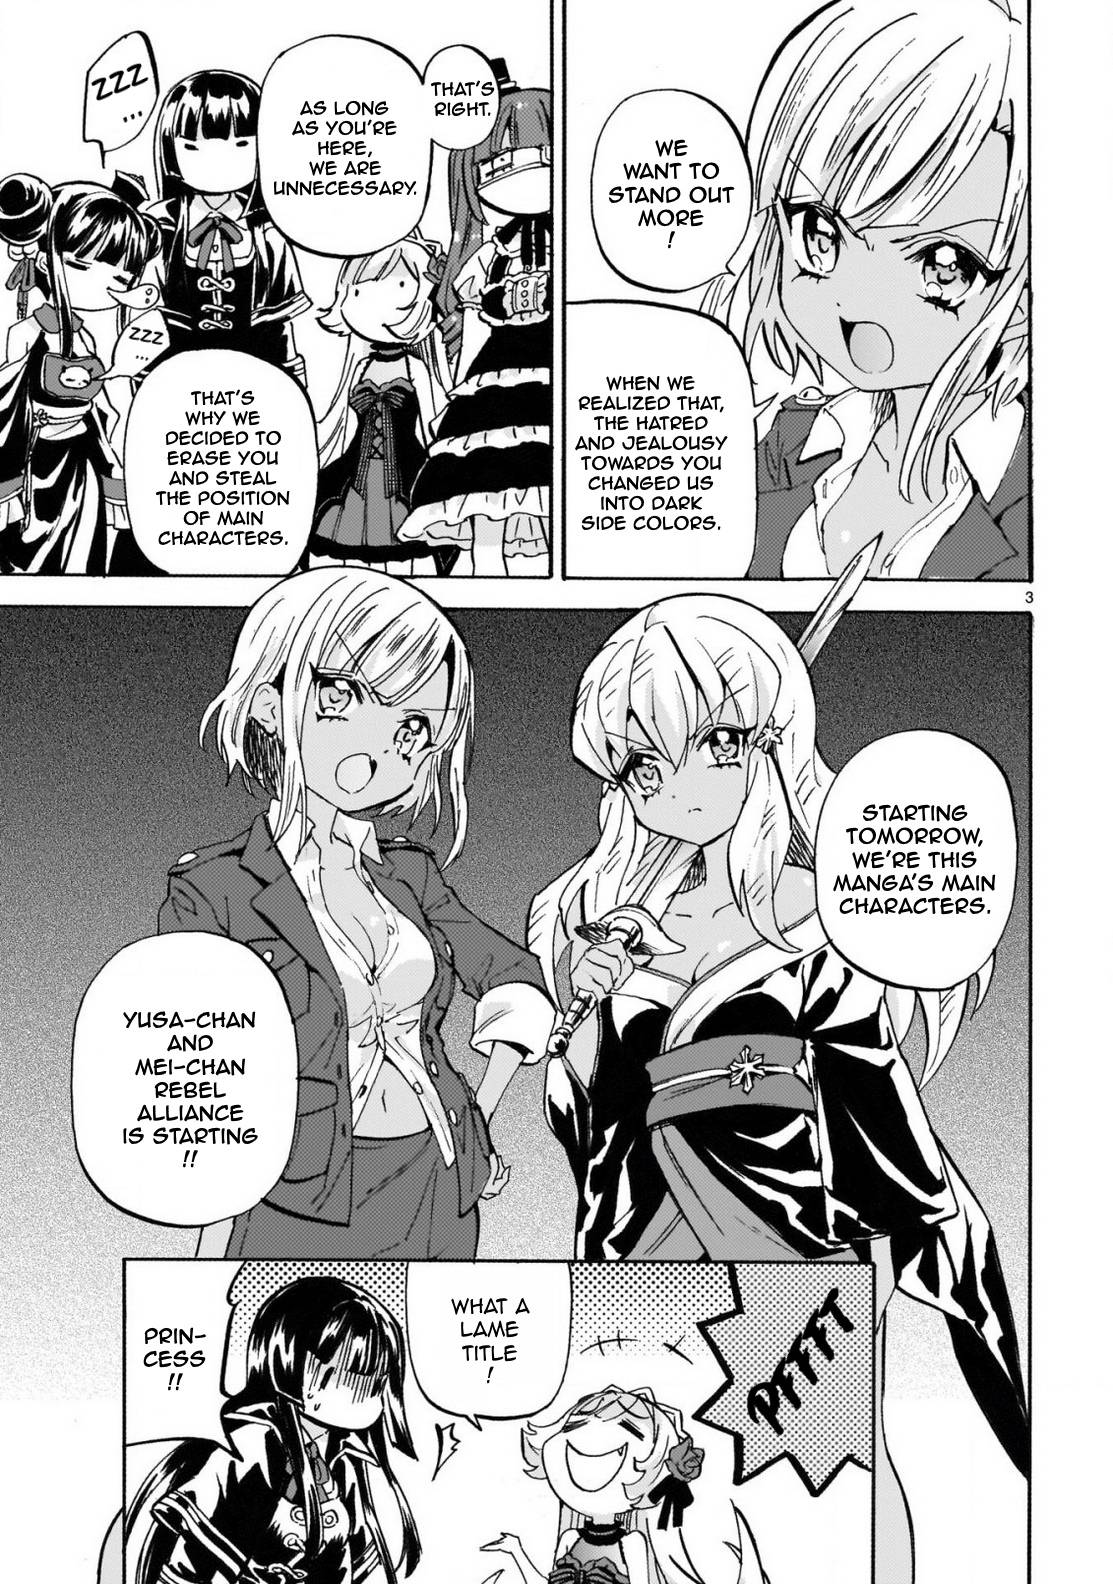 Jashin-chan Dropkick chapter 239 page 3